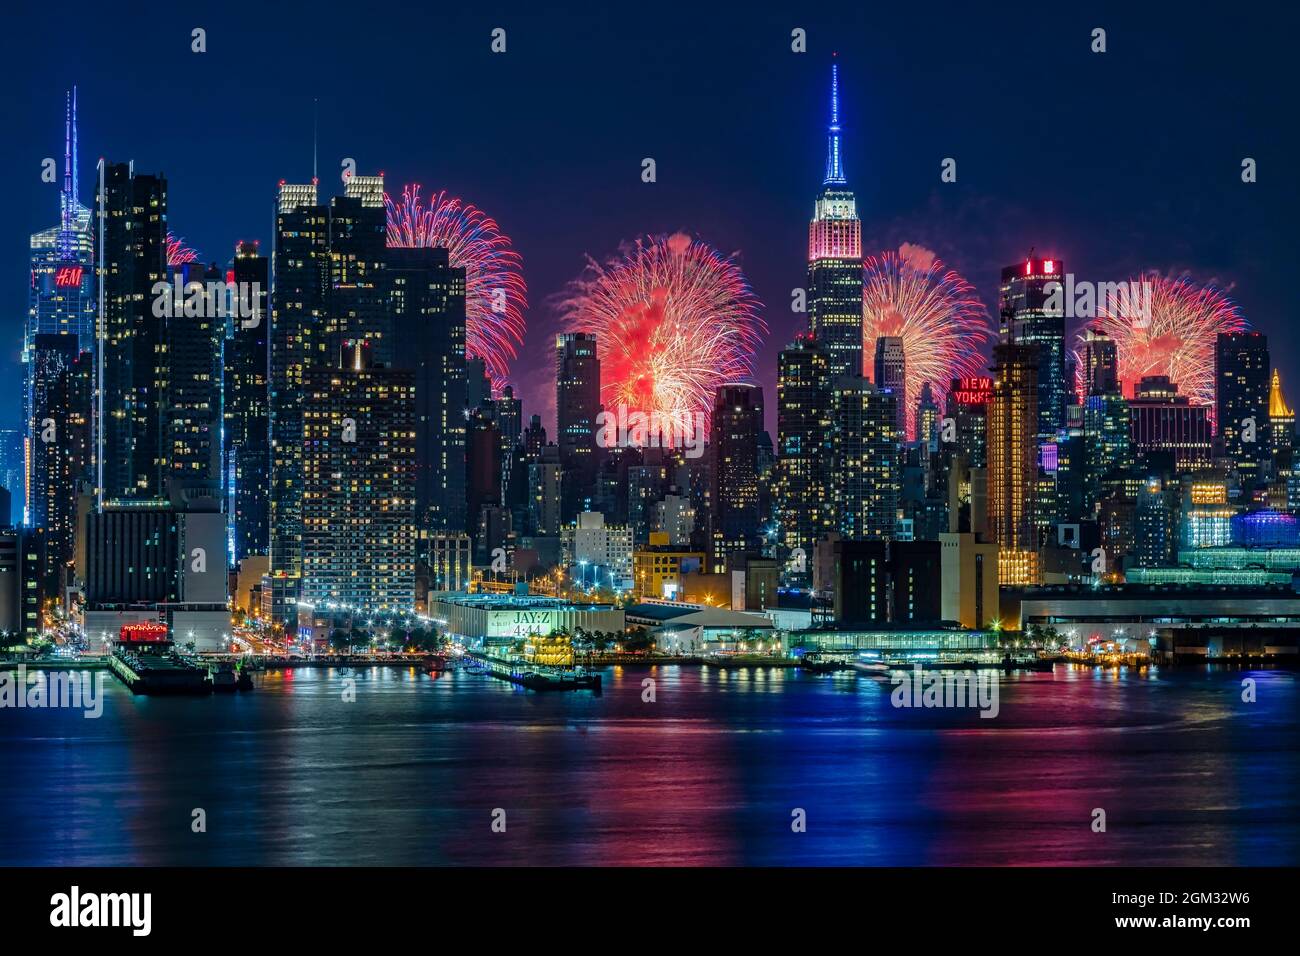 NYC Feuerwerk Feier - Skyline von New York City mit dem Macy's Spektakuläre 4. Juli Feuerwerk Feier zeigen als Kulisse für Midtown Manhatt Stockfoto